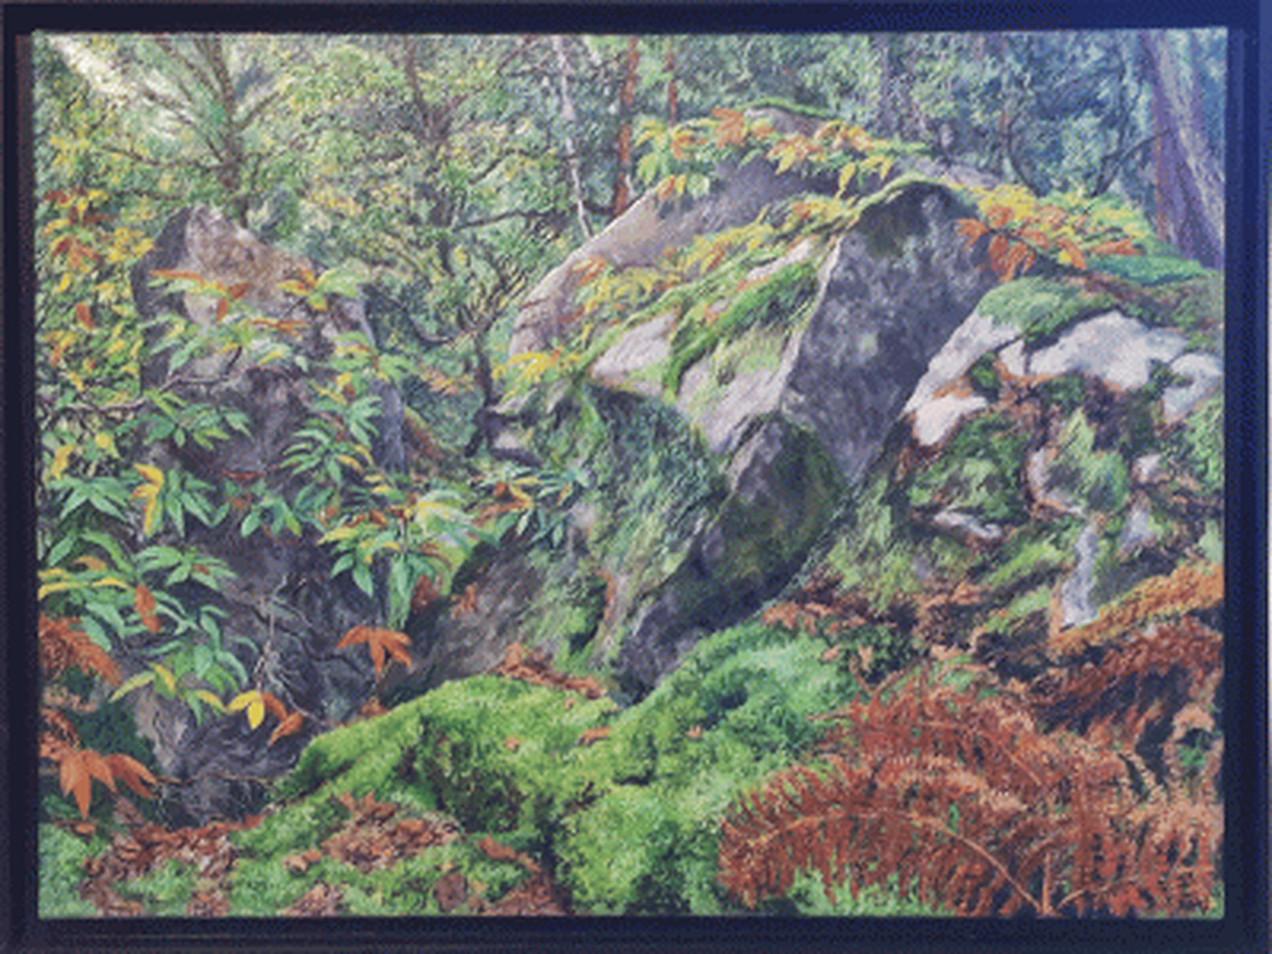 Reid MASSELINK Landscape Painting -  Chestnuts, Ferns, Mossy Rocks, 2013 